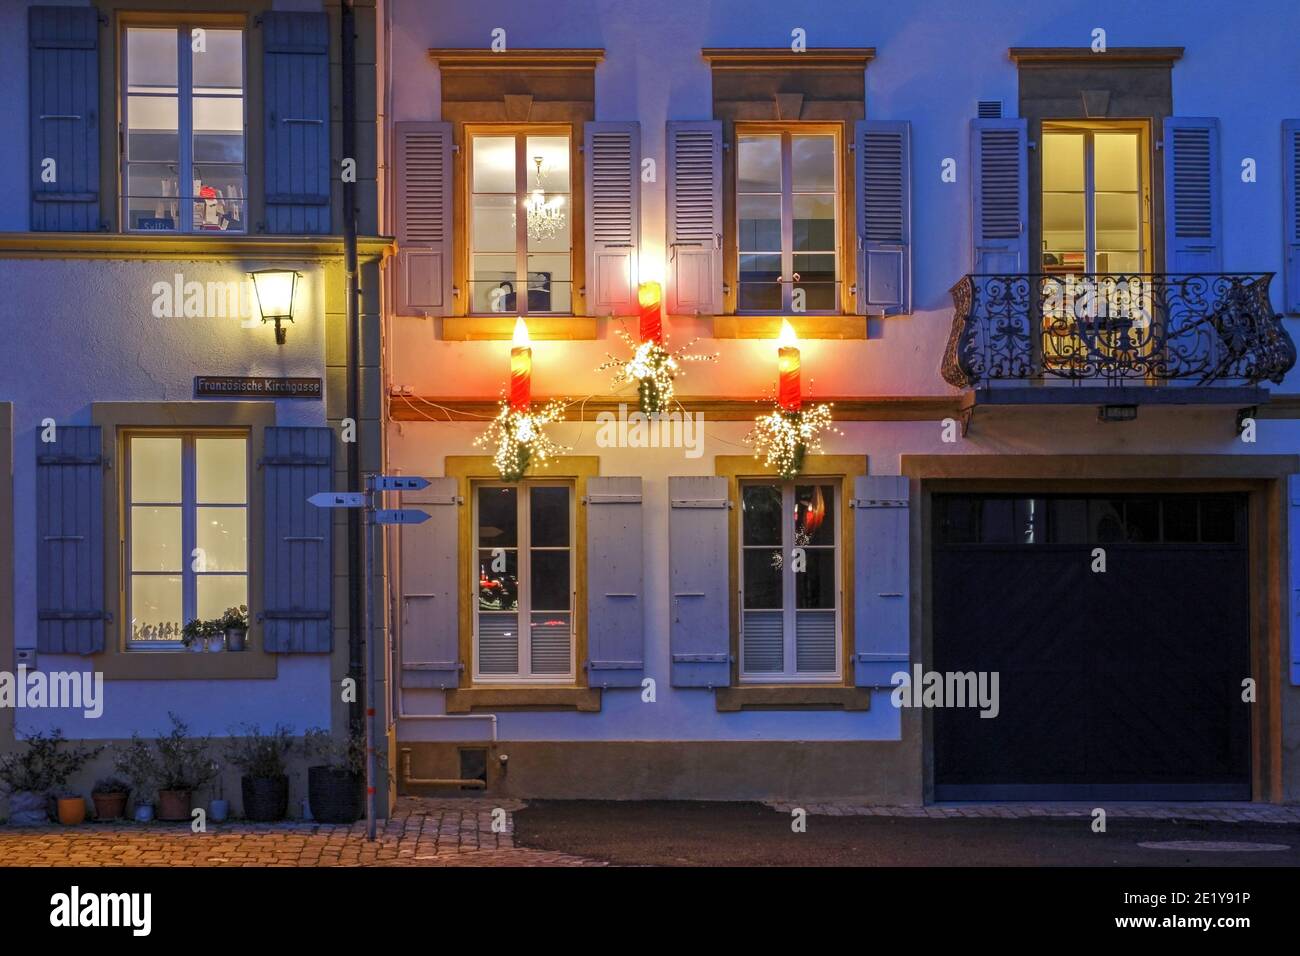 Drei kerzenartige Beleuchtung schmücken die Fassade eines schönen  Historisches Haus in Murten (oder Morat auf Französisch) In Freiburg Kanton  Schweiz während Stockfotografie - Alamy